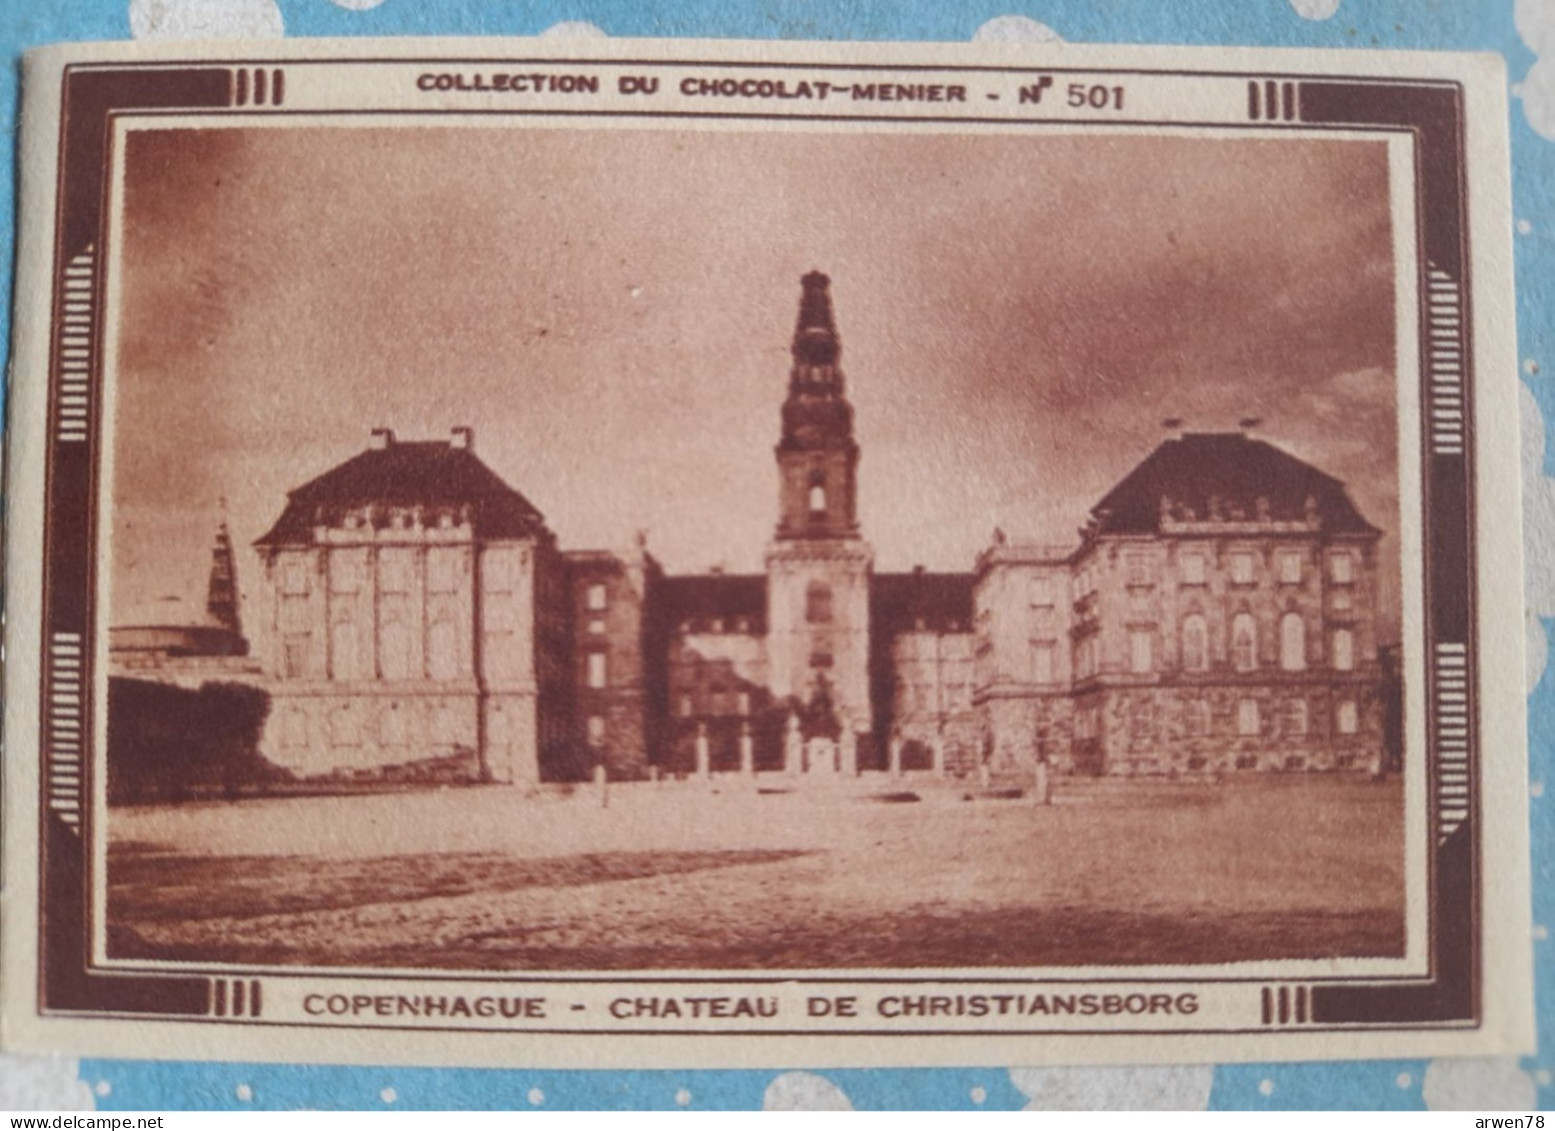 IMAGE MENIER N° 501 DANEMARK COPENHAGUE CHATEAU DE CHRISTIANSBORG - Menier